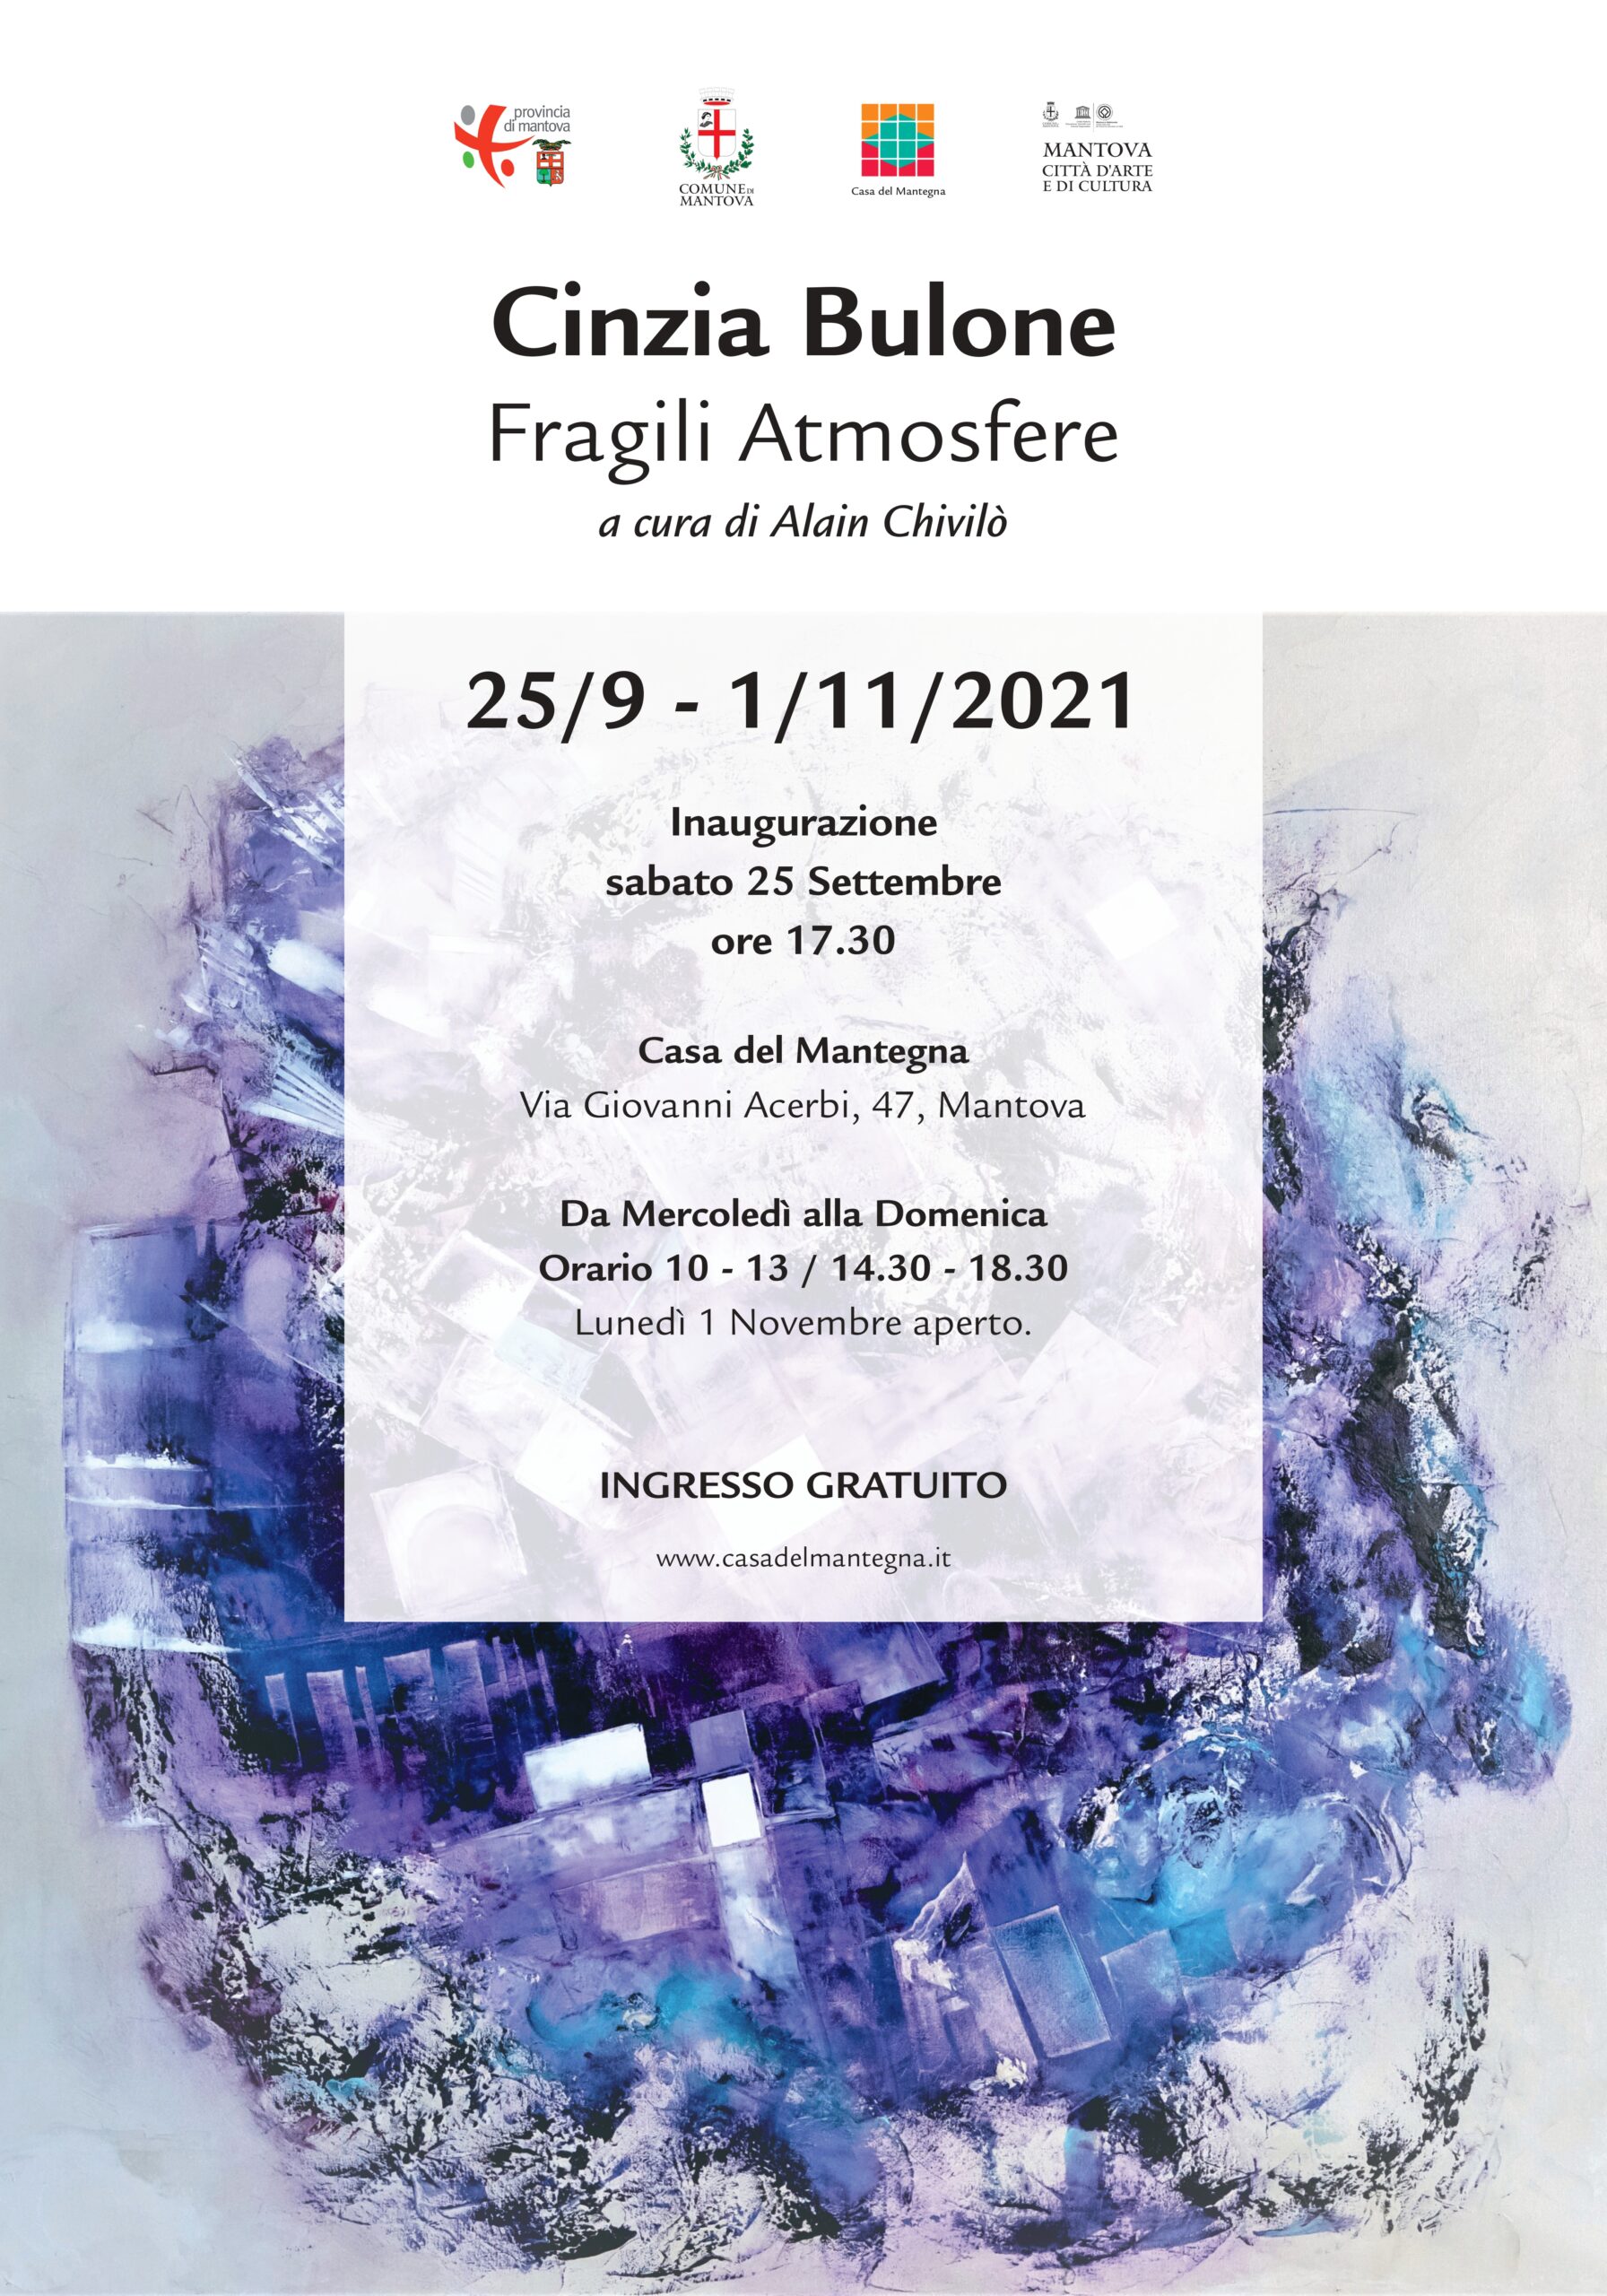 Cinzia Bulone_Fragili Armosfere_a cura di Alain Chivilo_Casa del Mantegna Mantova